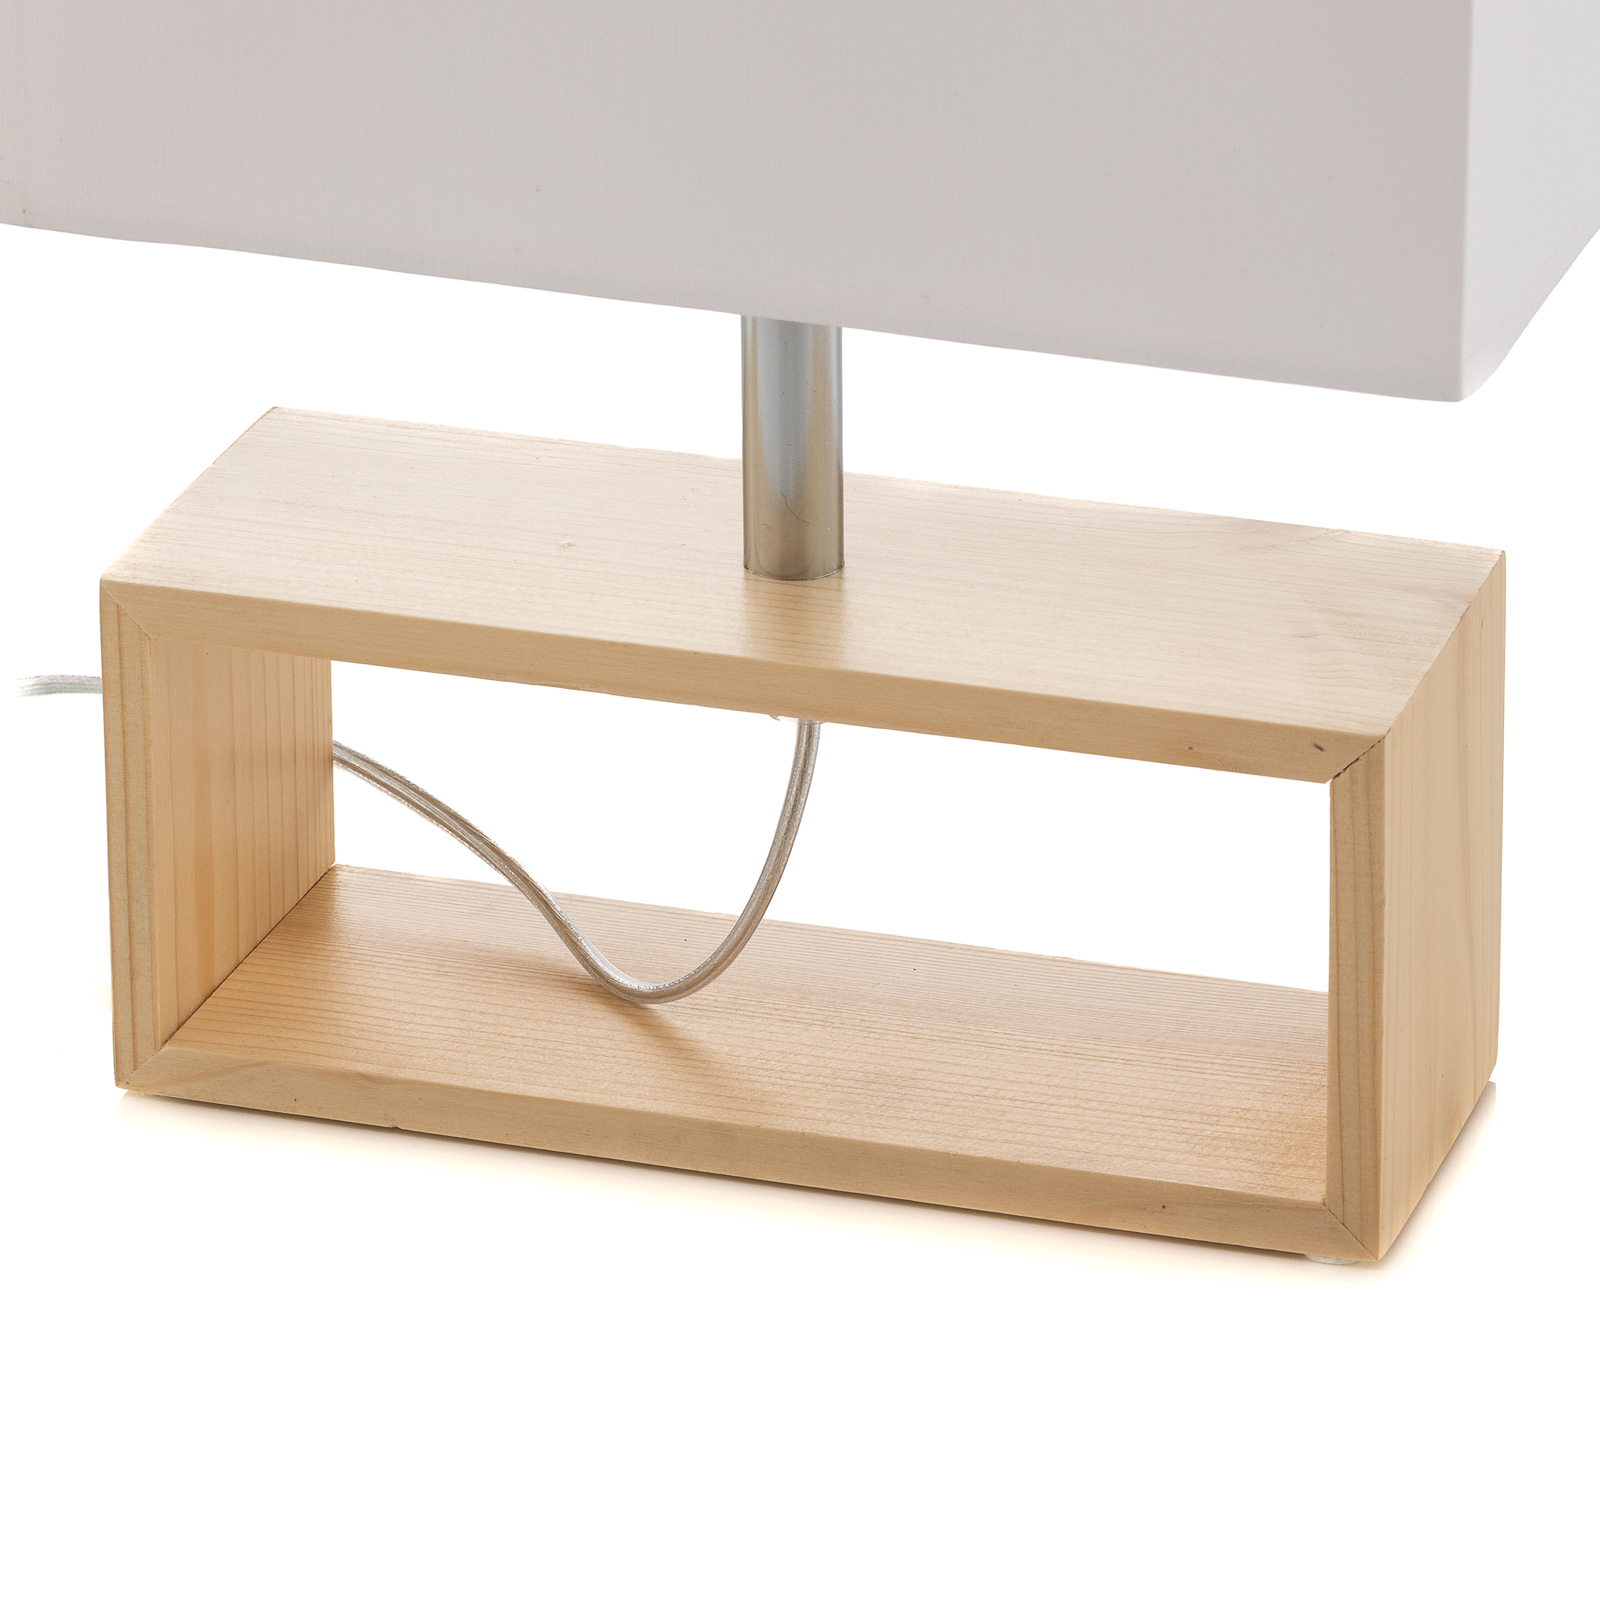 Faxa table lamp, rectangular shape, natural/white